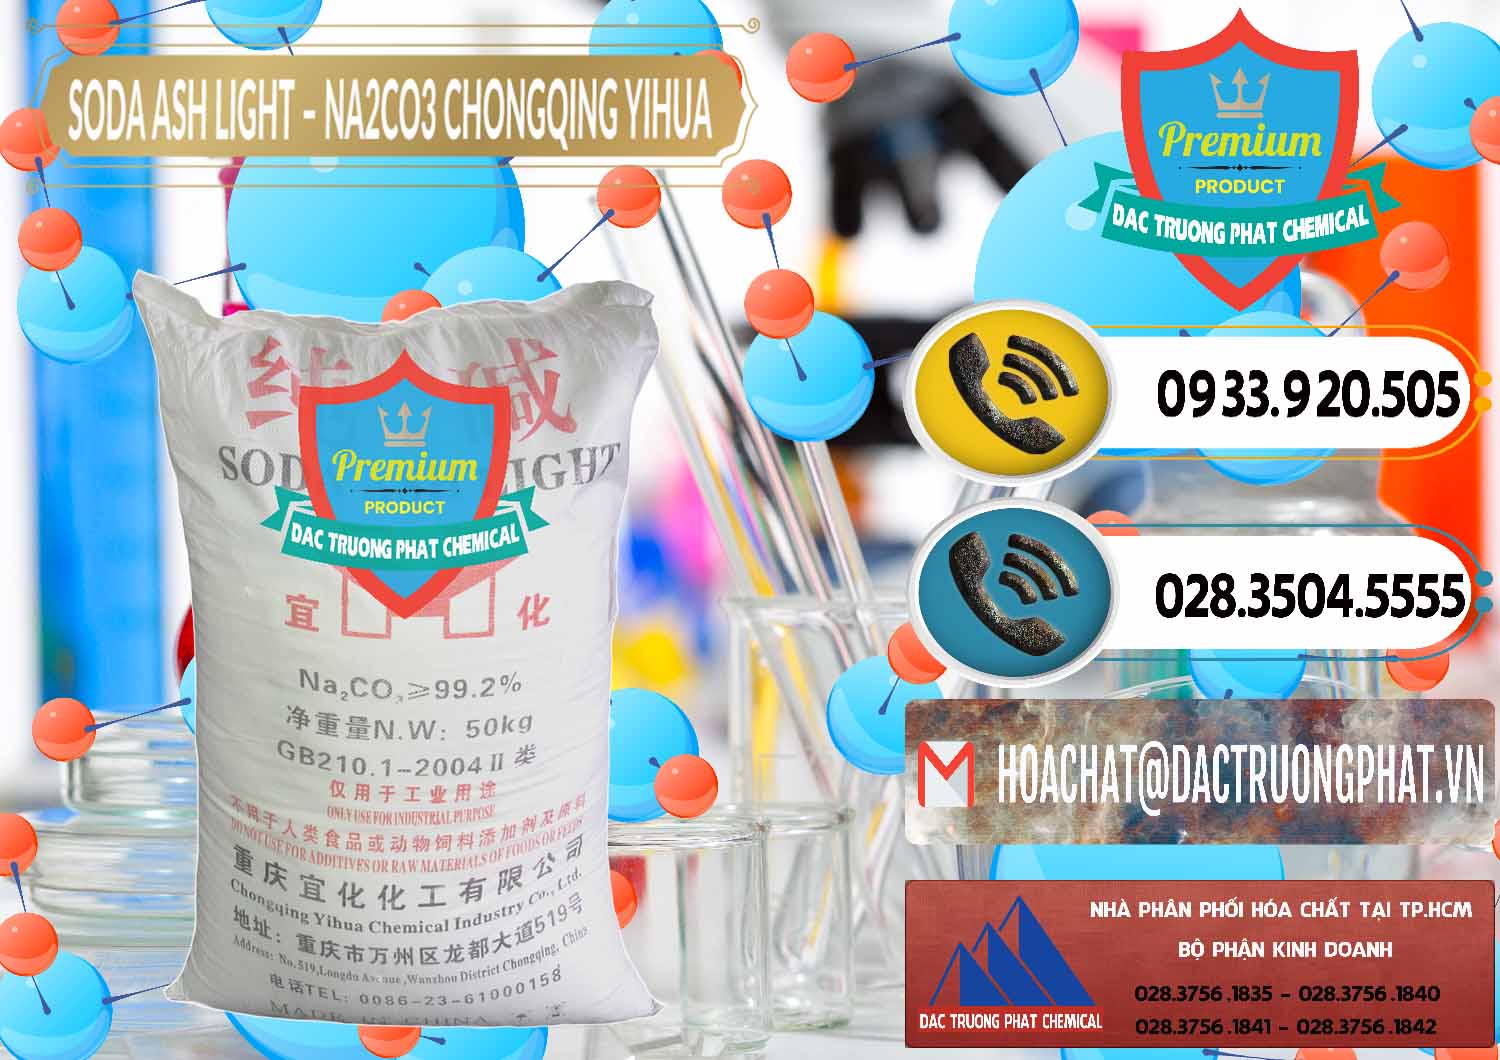 Chuyên bán - phân phối Soda Ash Light - NA2CO3 Chongqing Yihua Trung Quốc China - 0129 - Nơi nhập khẩu & phân phối hóa chất tại TP.HCM - hoachatdetnhuom.vn